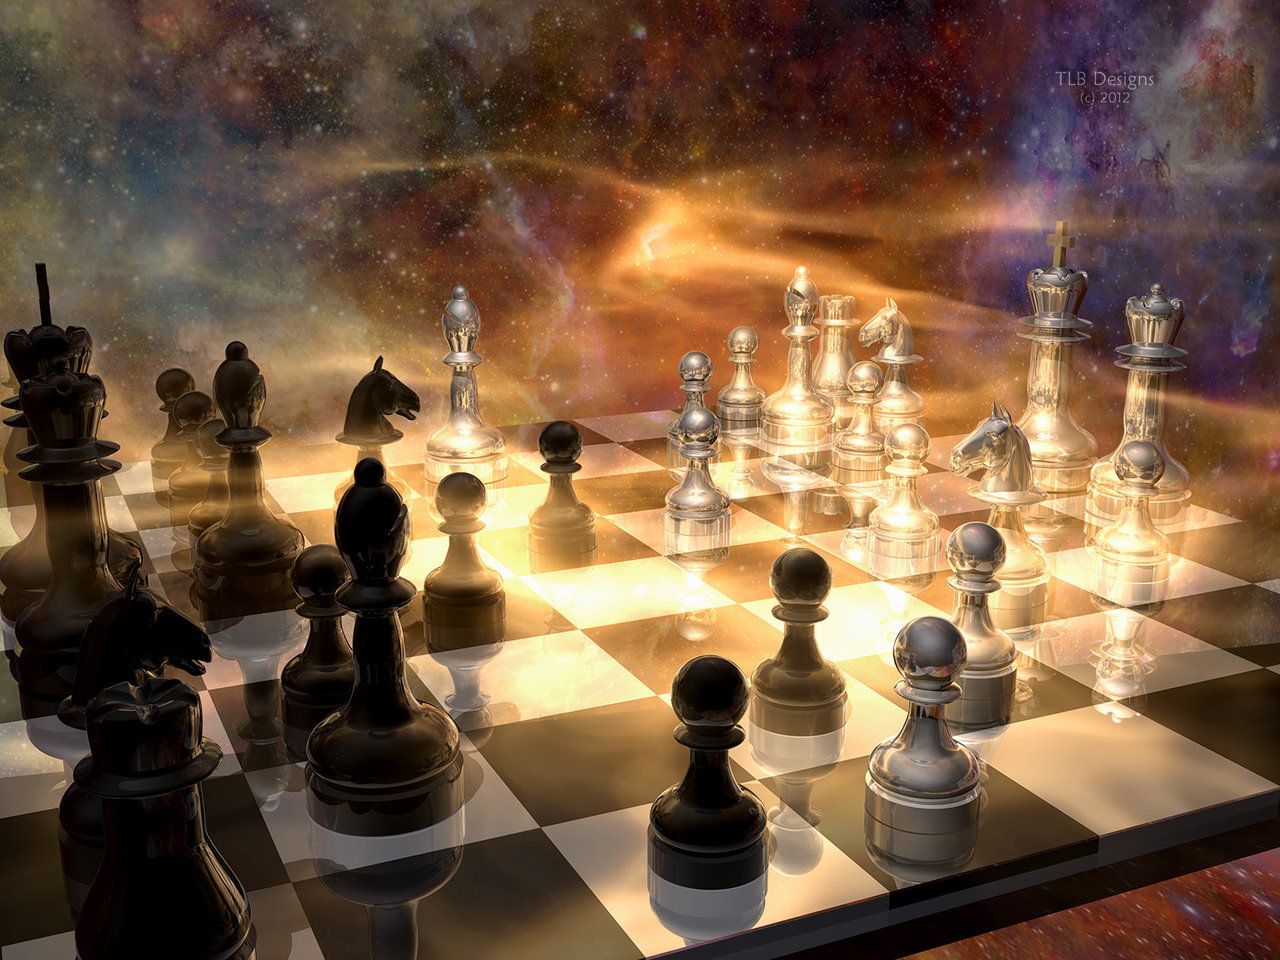 Chess is a game. Шахматы фэнтези. Шахматные фигуры. Шахматы красивые. Шахматы фон.